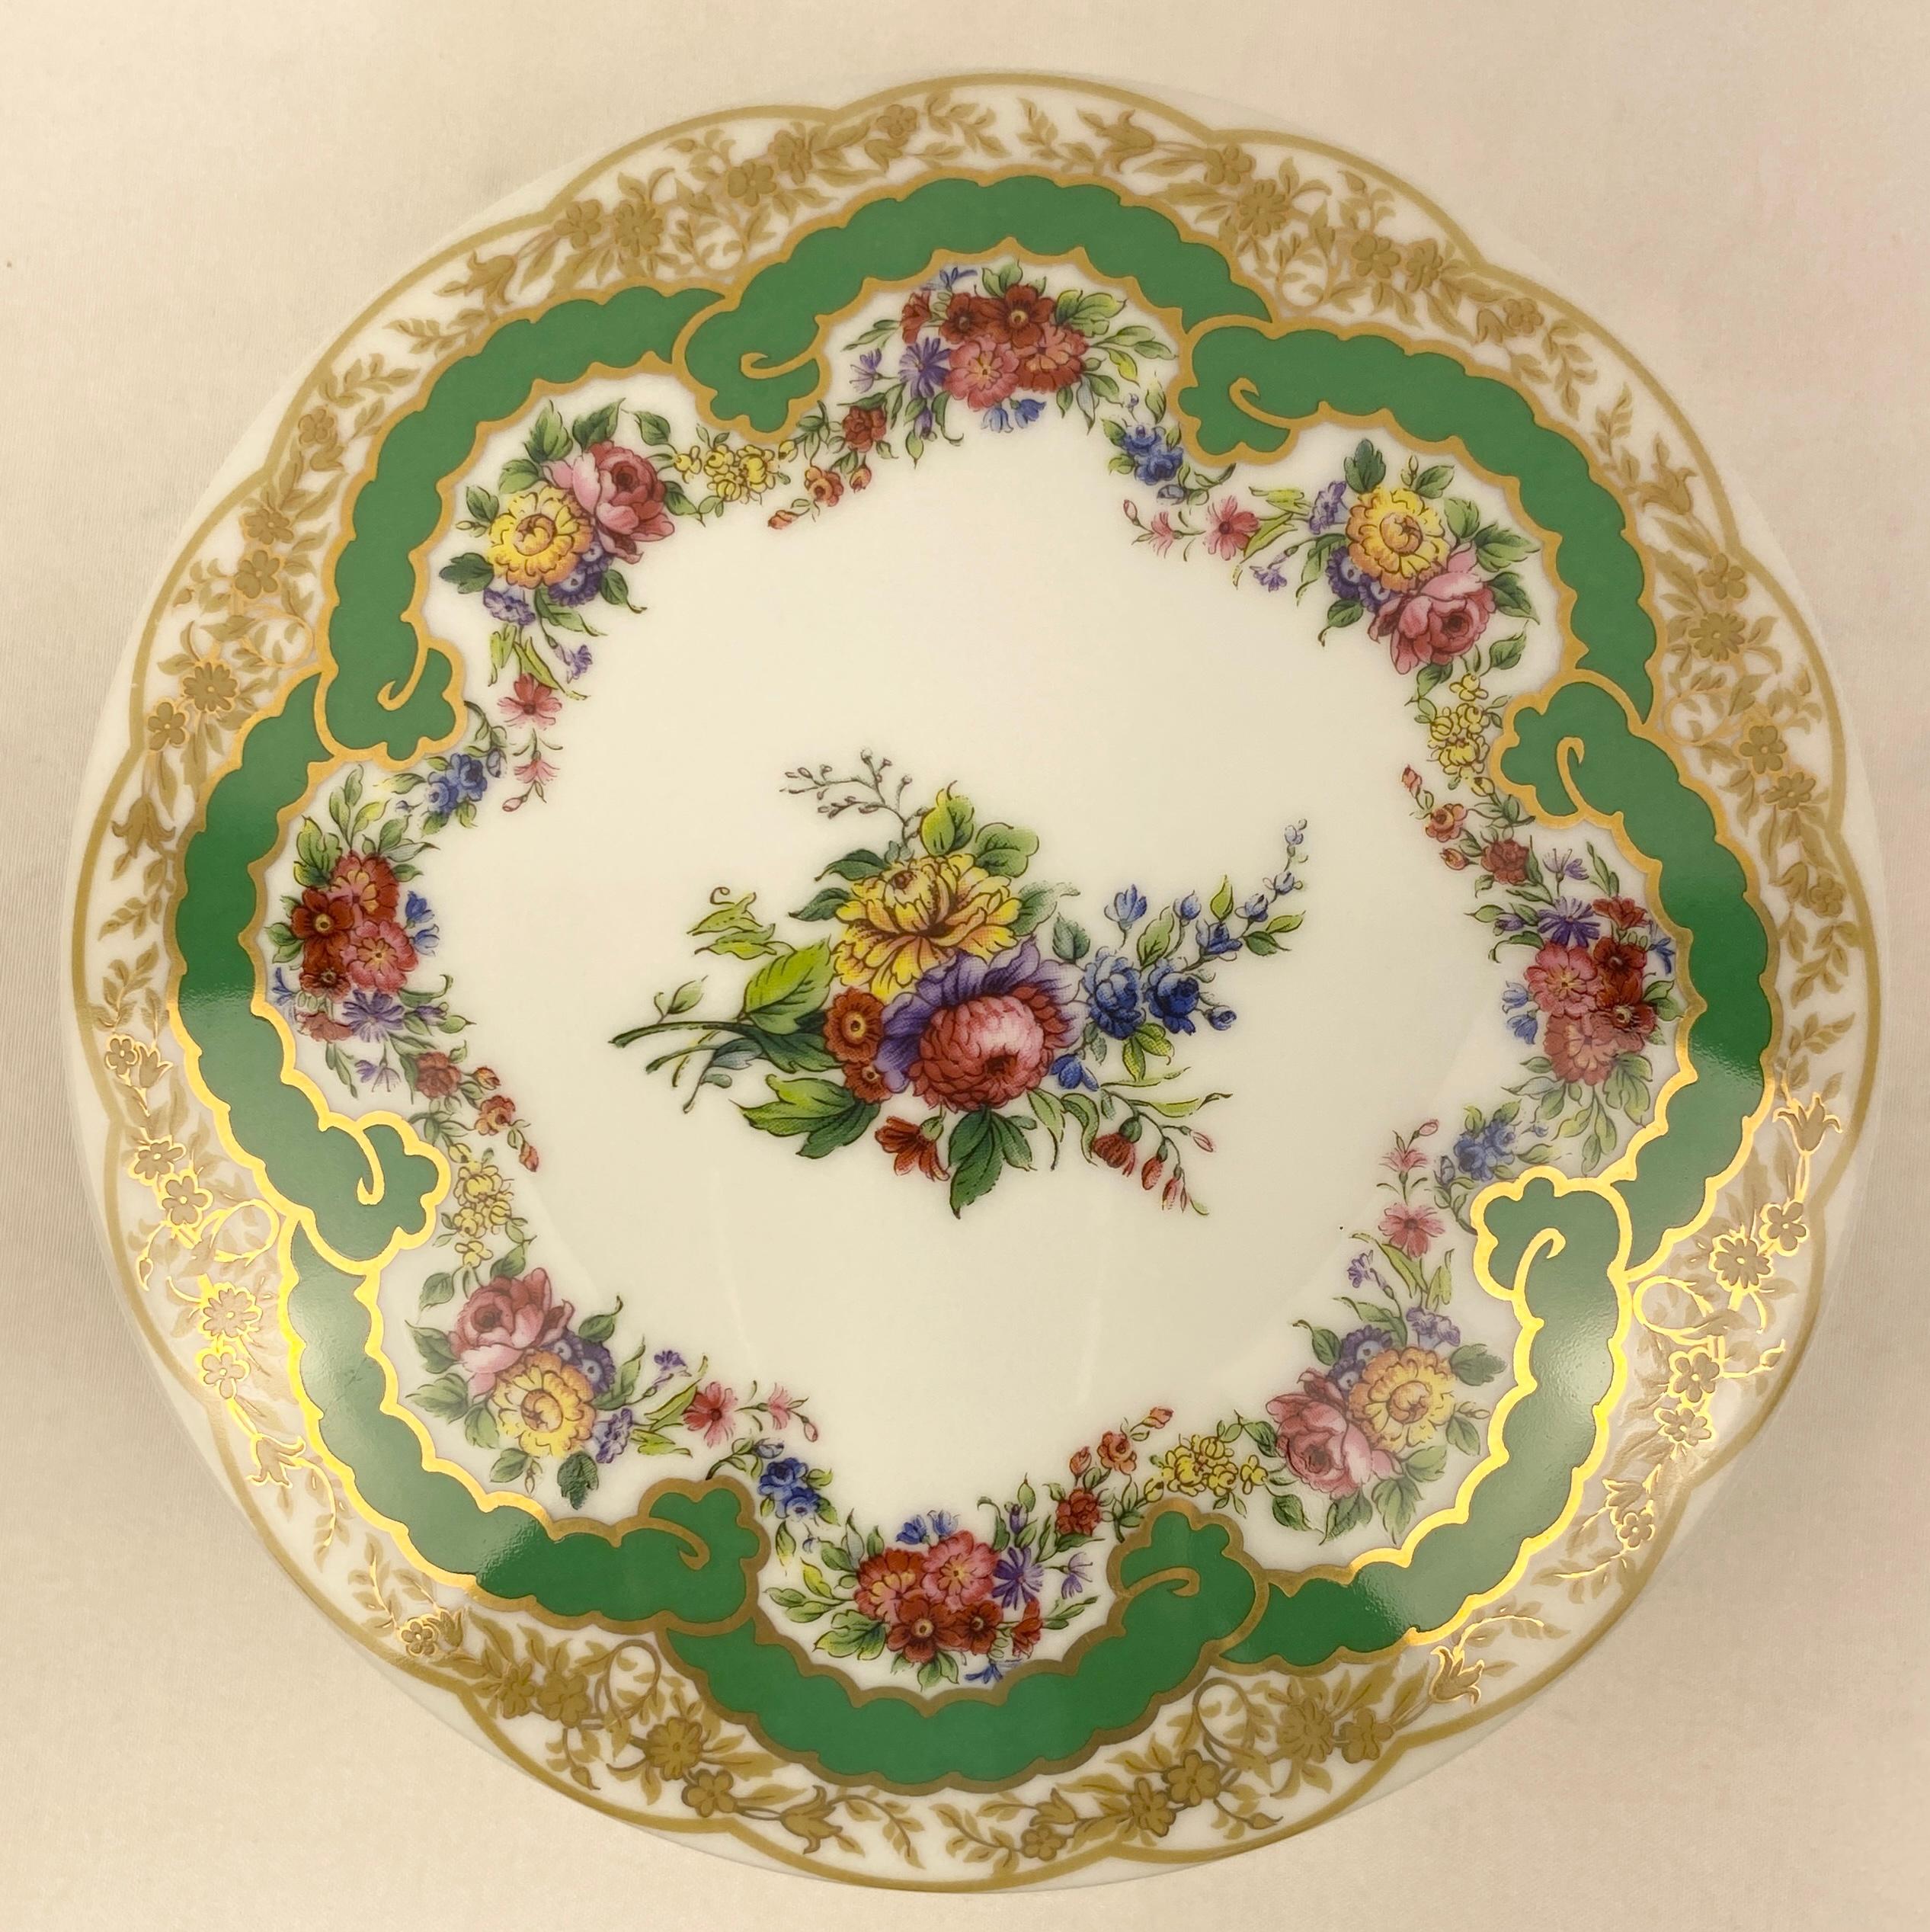 Hochwertiges Porzellan mit Deckel, inspiriert von Sèvres-Designs des 19. Jahrhunderts.

Dieses schöne Porzellan-Bonbongeschirr mit Deckel ist handgefertigt und handbemalt und besteht aus hochwertigen Materialien und handwerklichem Können.

Obwohl